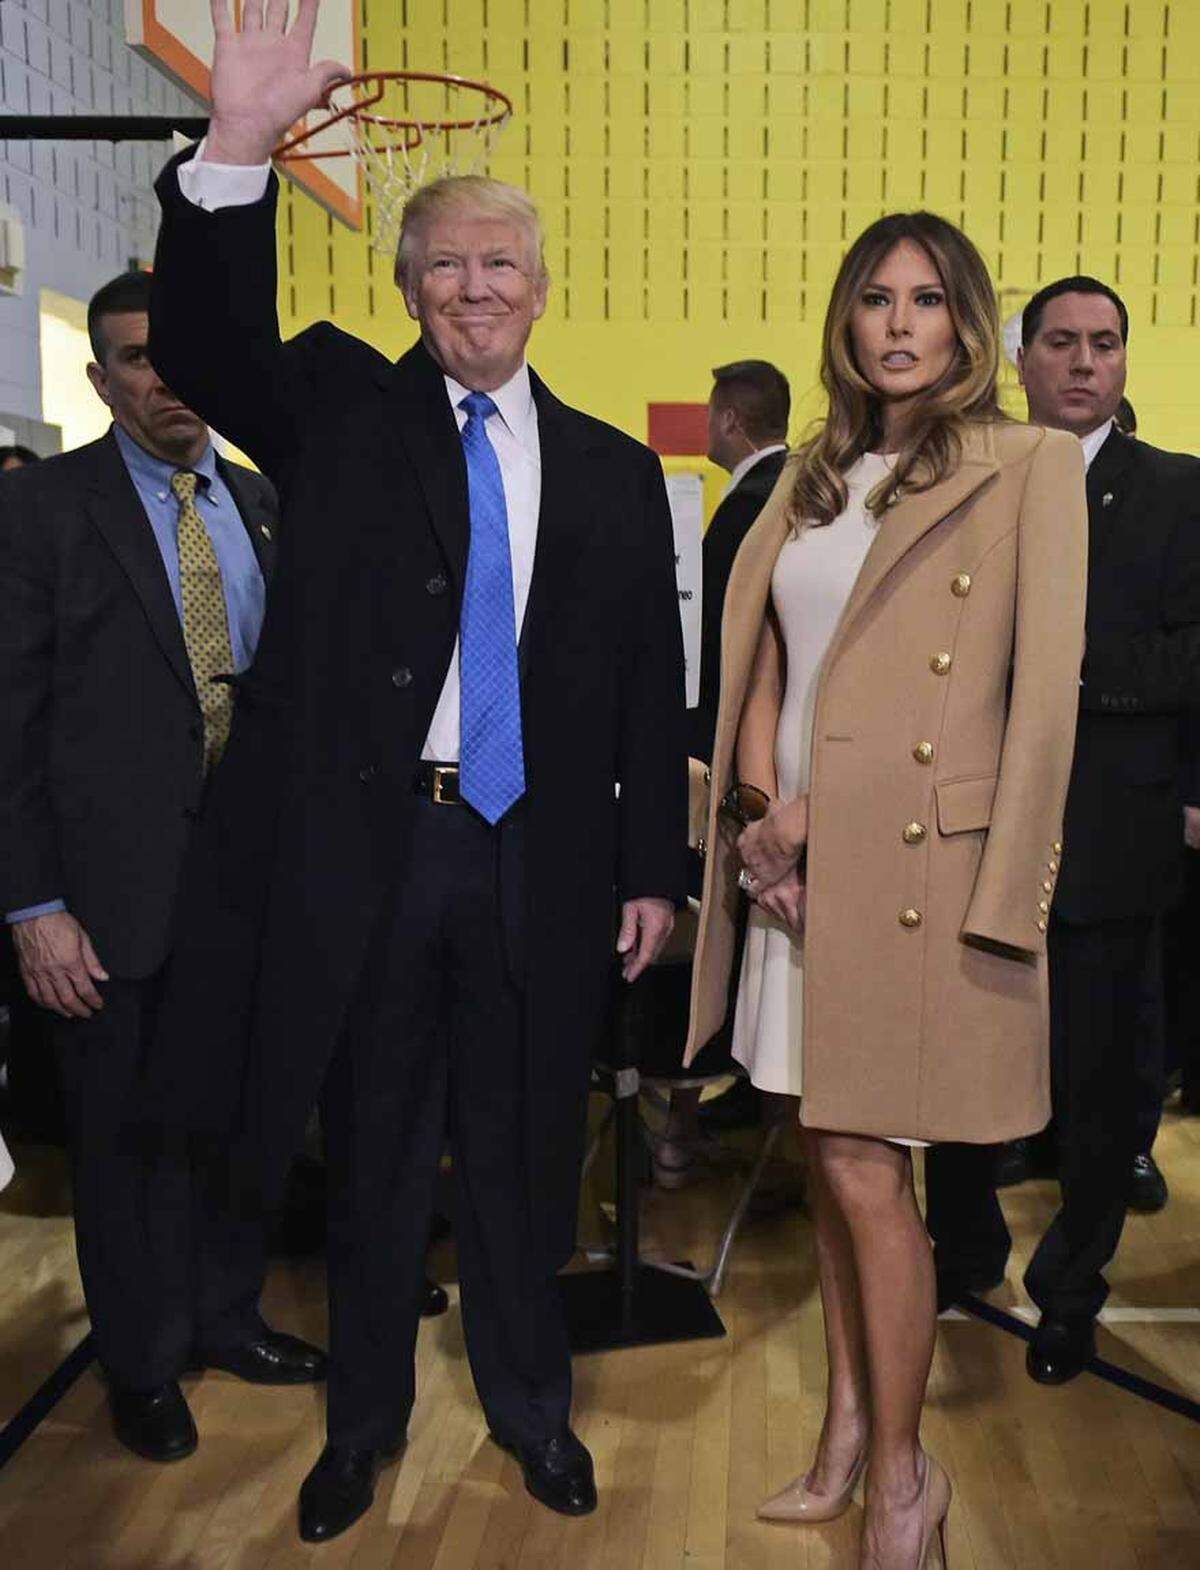 Zur Stimmabgabe kam die Ehefrau von Donald Trump in einem ceemefarbenen Kleid von Michael Kors. Darüber trug sie einen Mantel von Balmain.